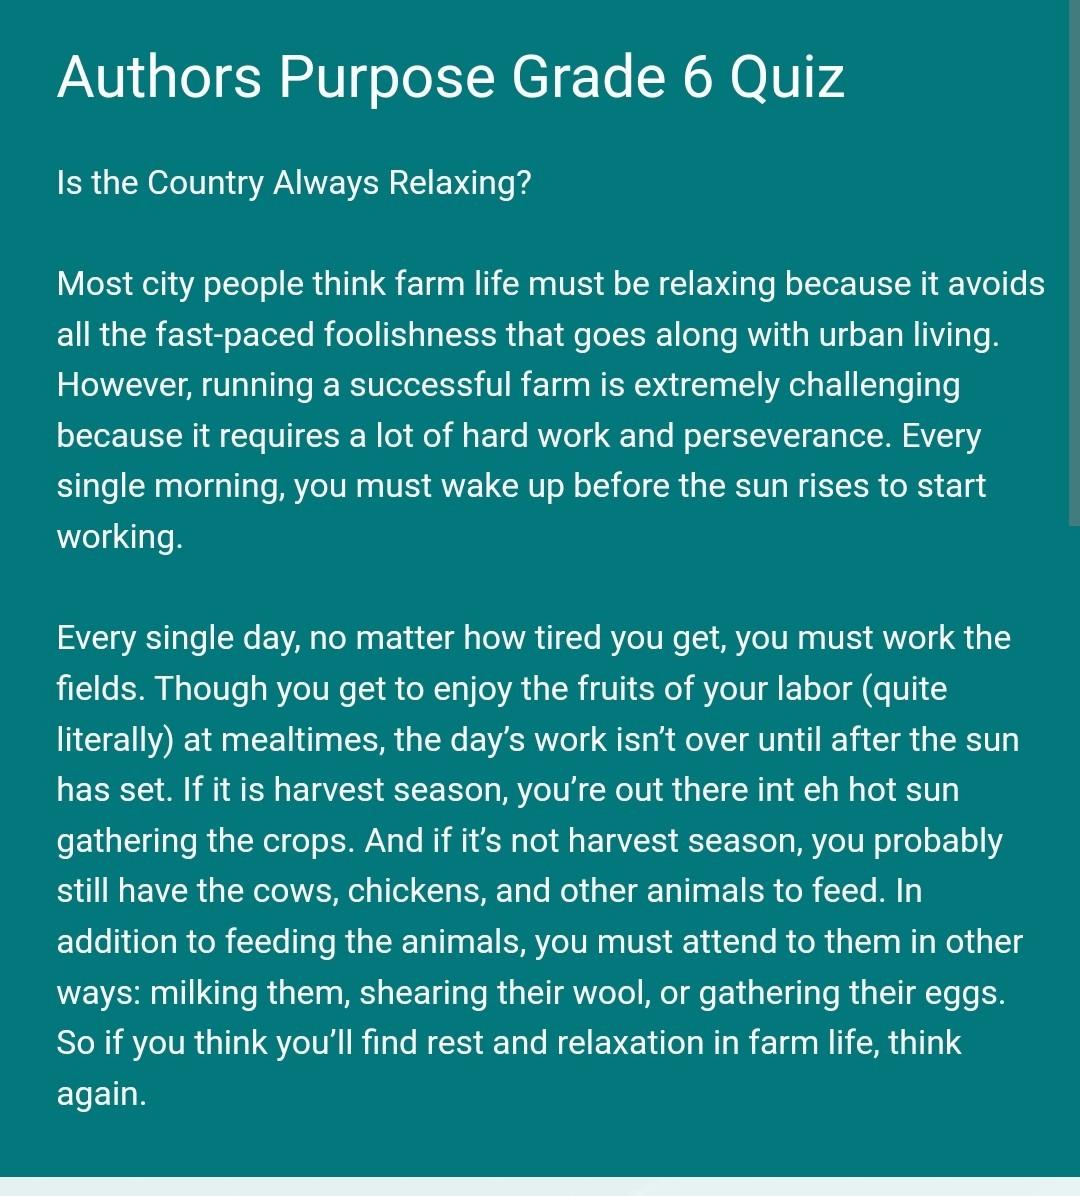 Author's Purpose Quiz